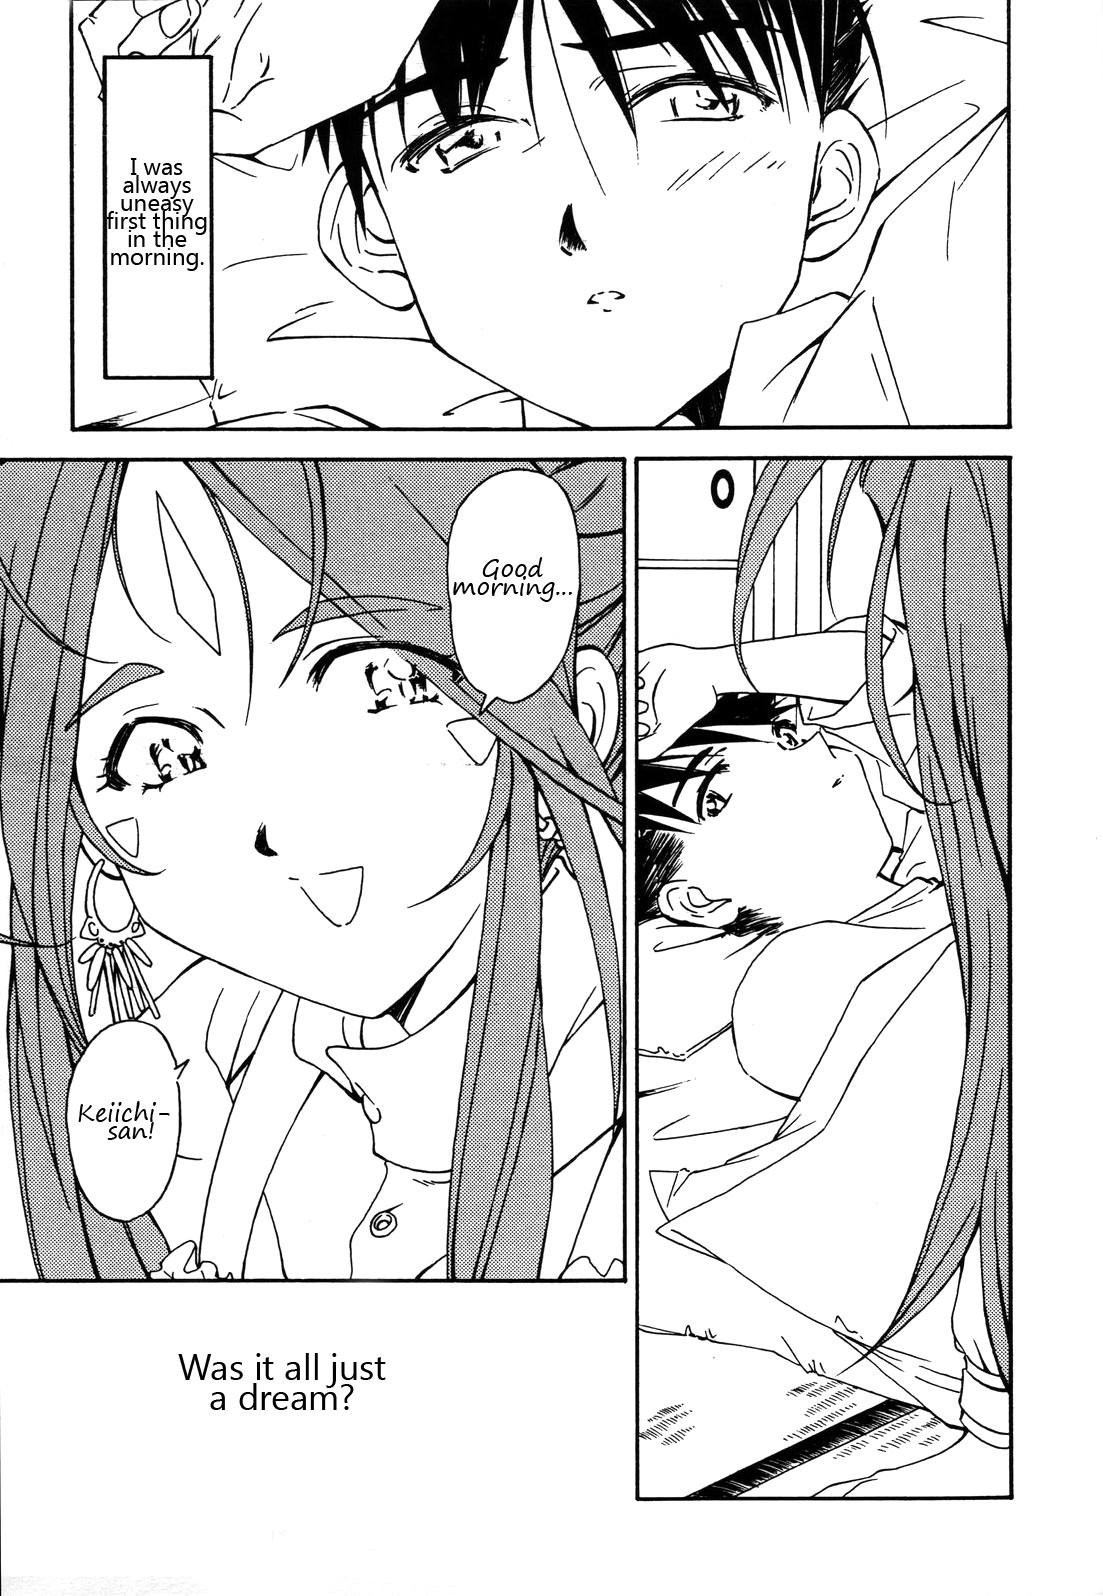 Tiny Titties Ohayou Gozaimasu! Megami-sama! - Ah my goddess Hd Porn - Page 2